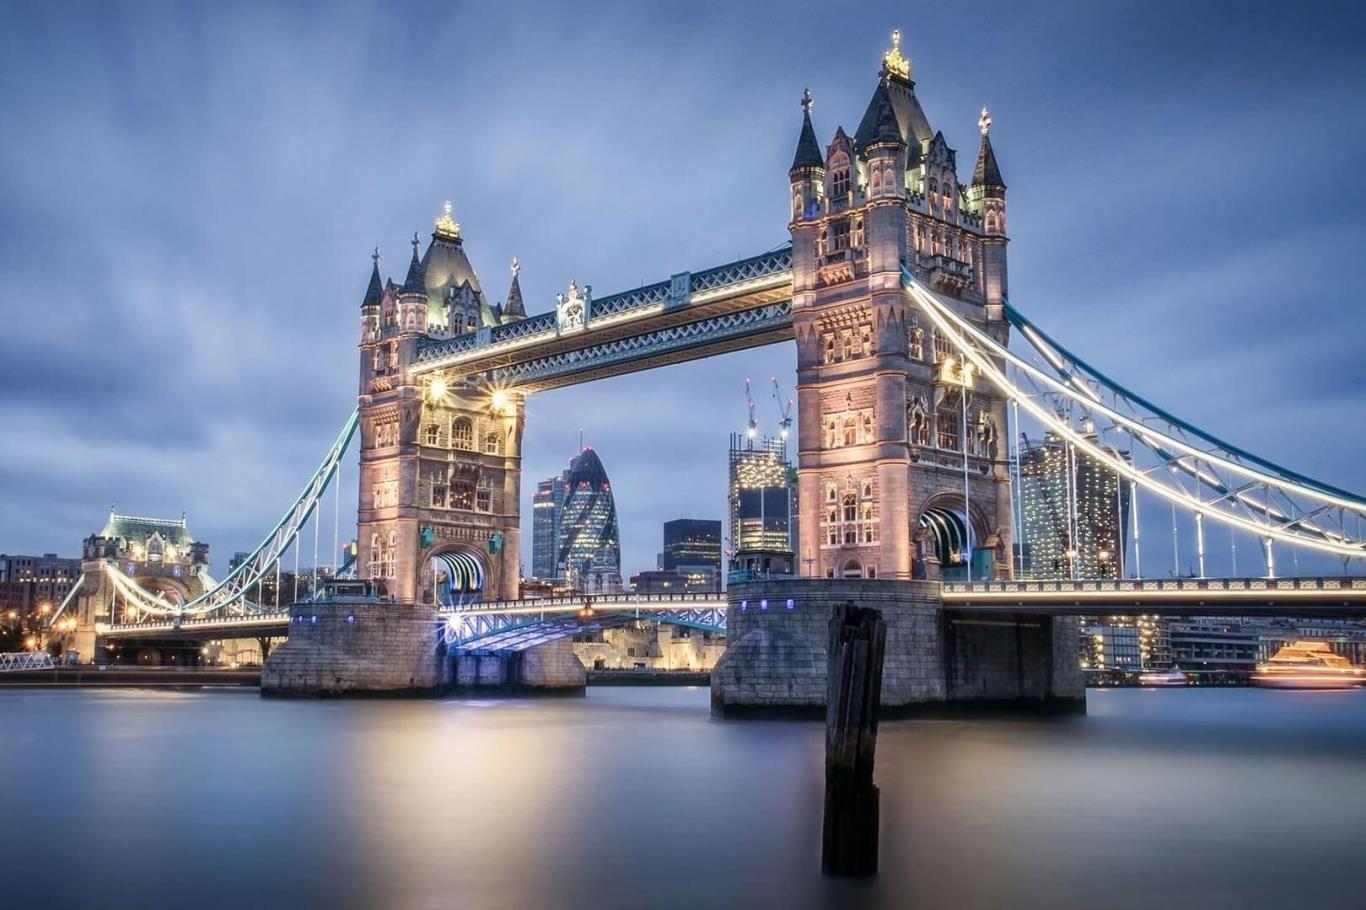 Cây cầu tháp London - công trình kết hợp cầu treo với cầu nâng